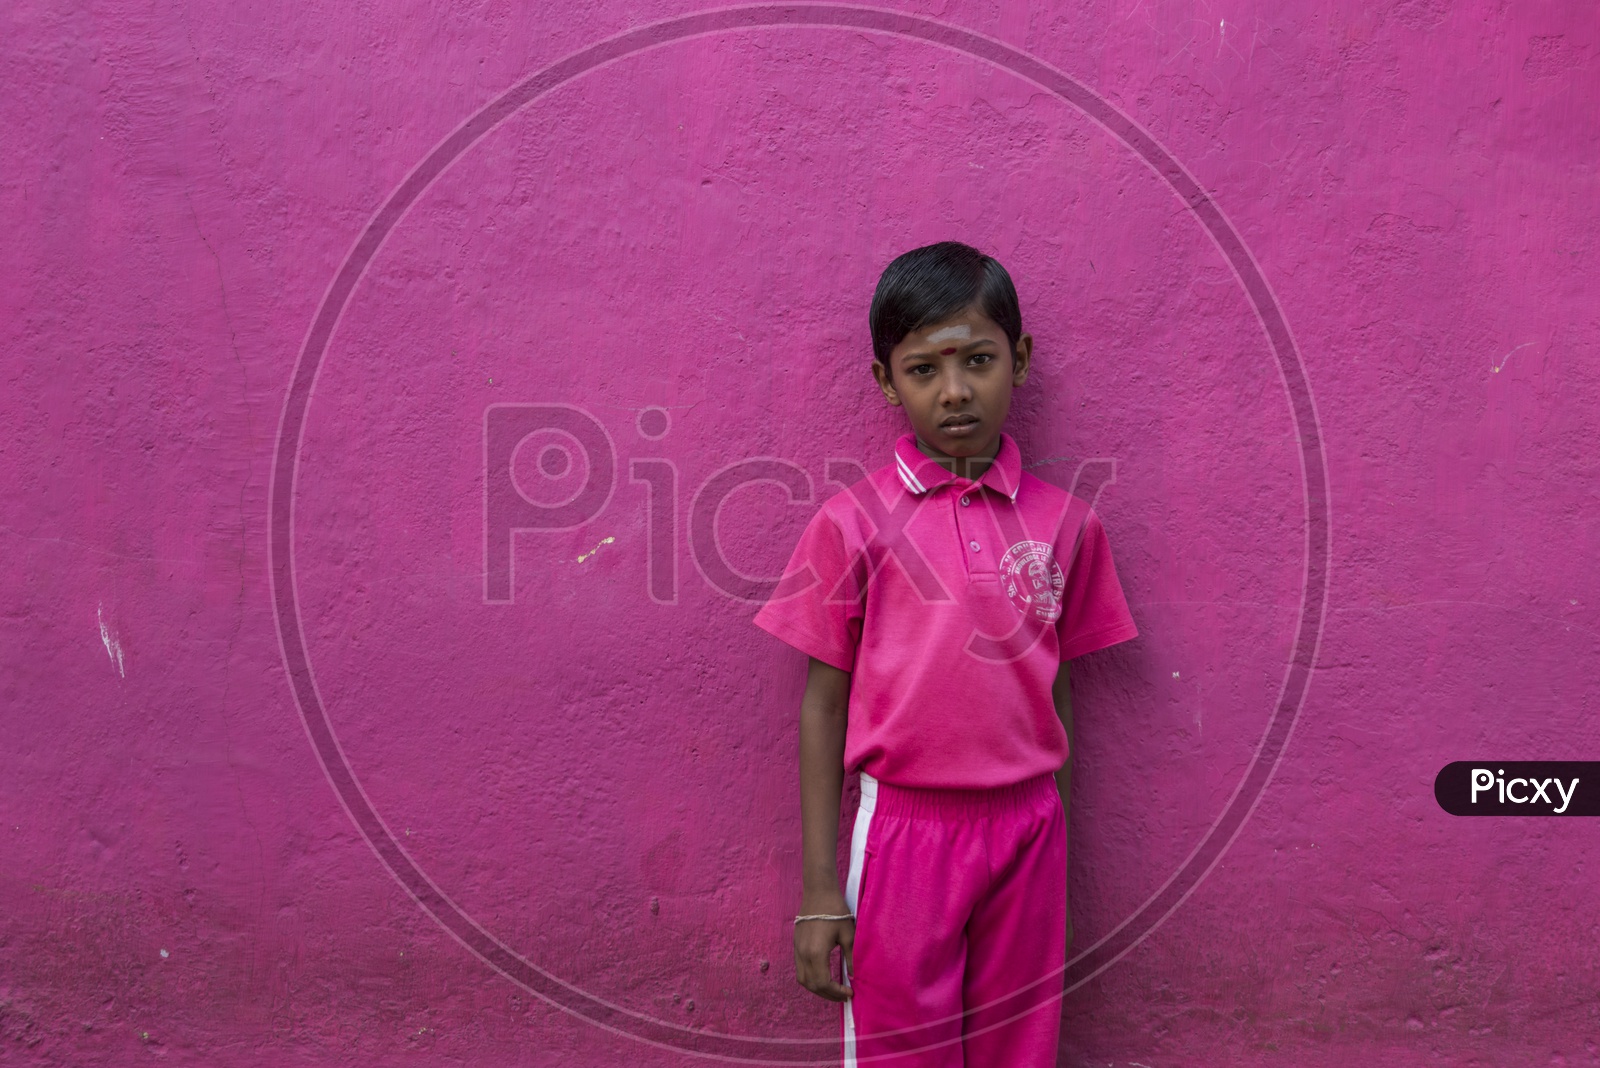 A Portrait Of a School boy in Uniform From Tamil Nadu